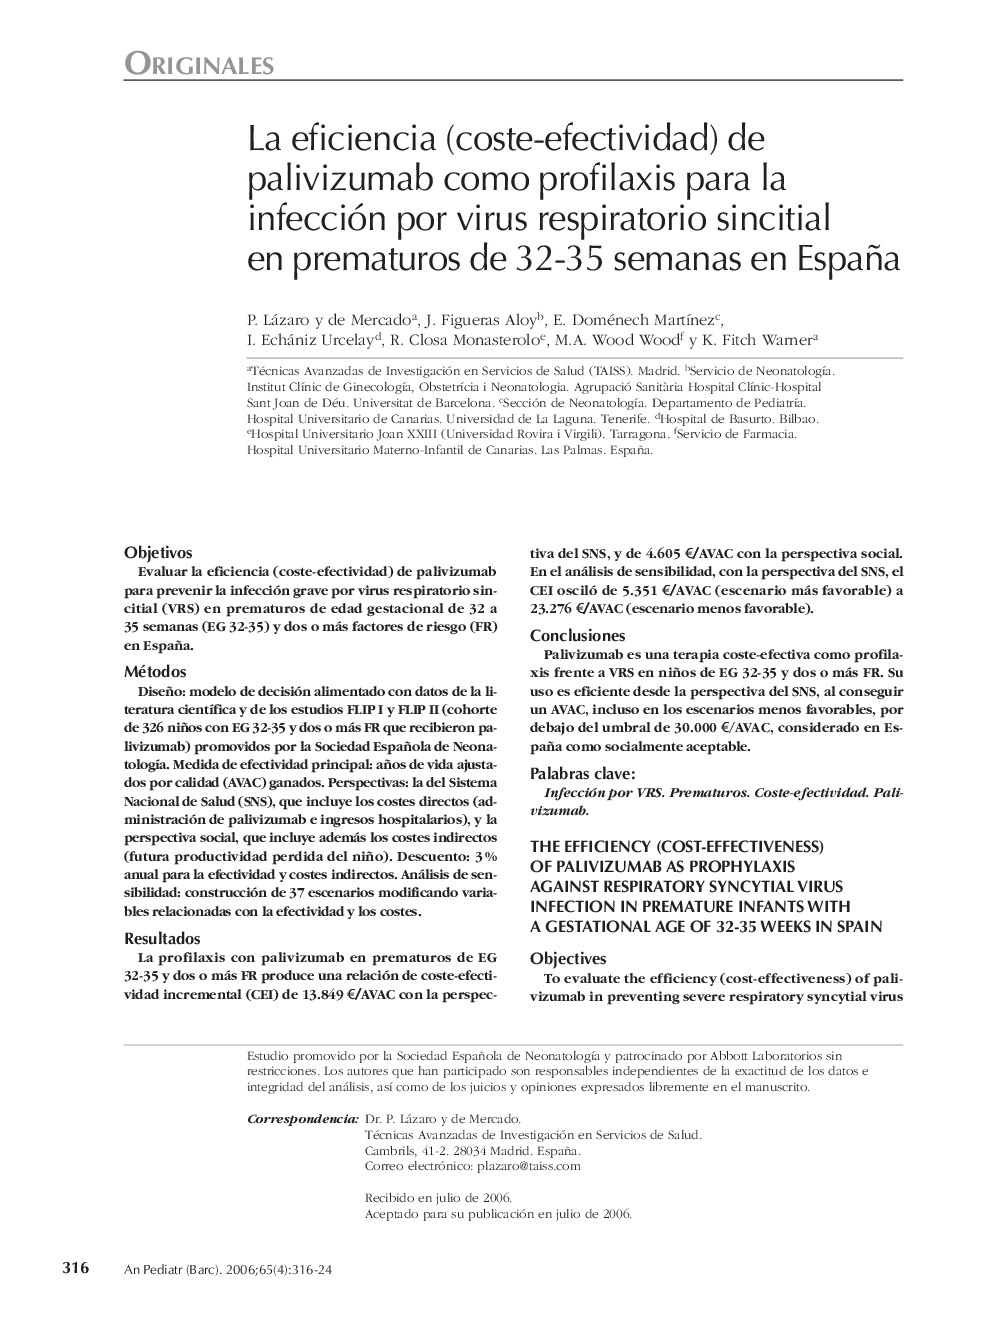 La eficiencia (coste-efectividad) de palivizumab como profilaxis para la infección por virus respiratorio sincitial en prematuros de 32-35 semanas en España